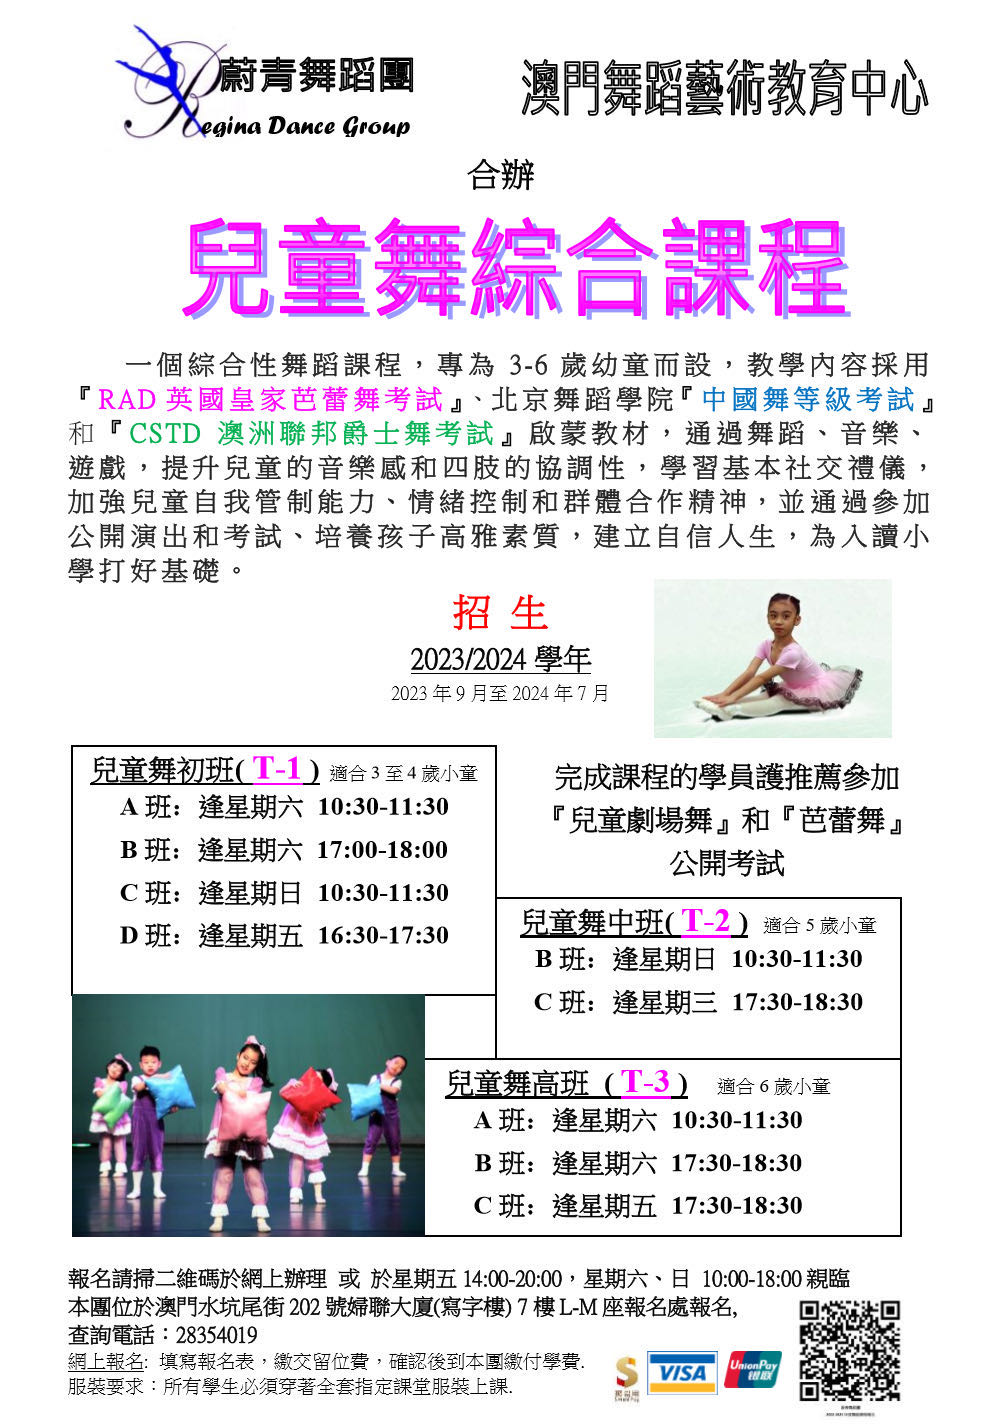 蔚青舞蹈團X澳門舞蹈藝術教育中心 合辦課程